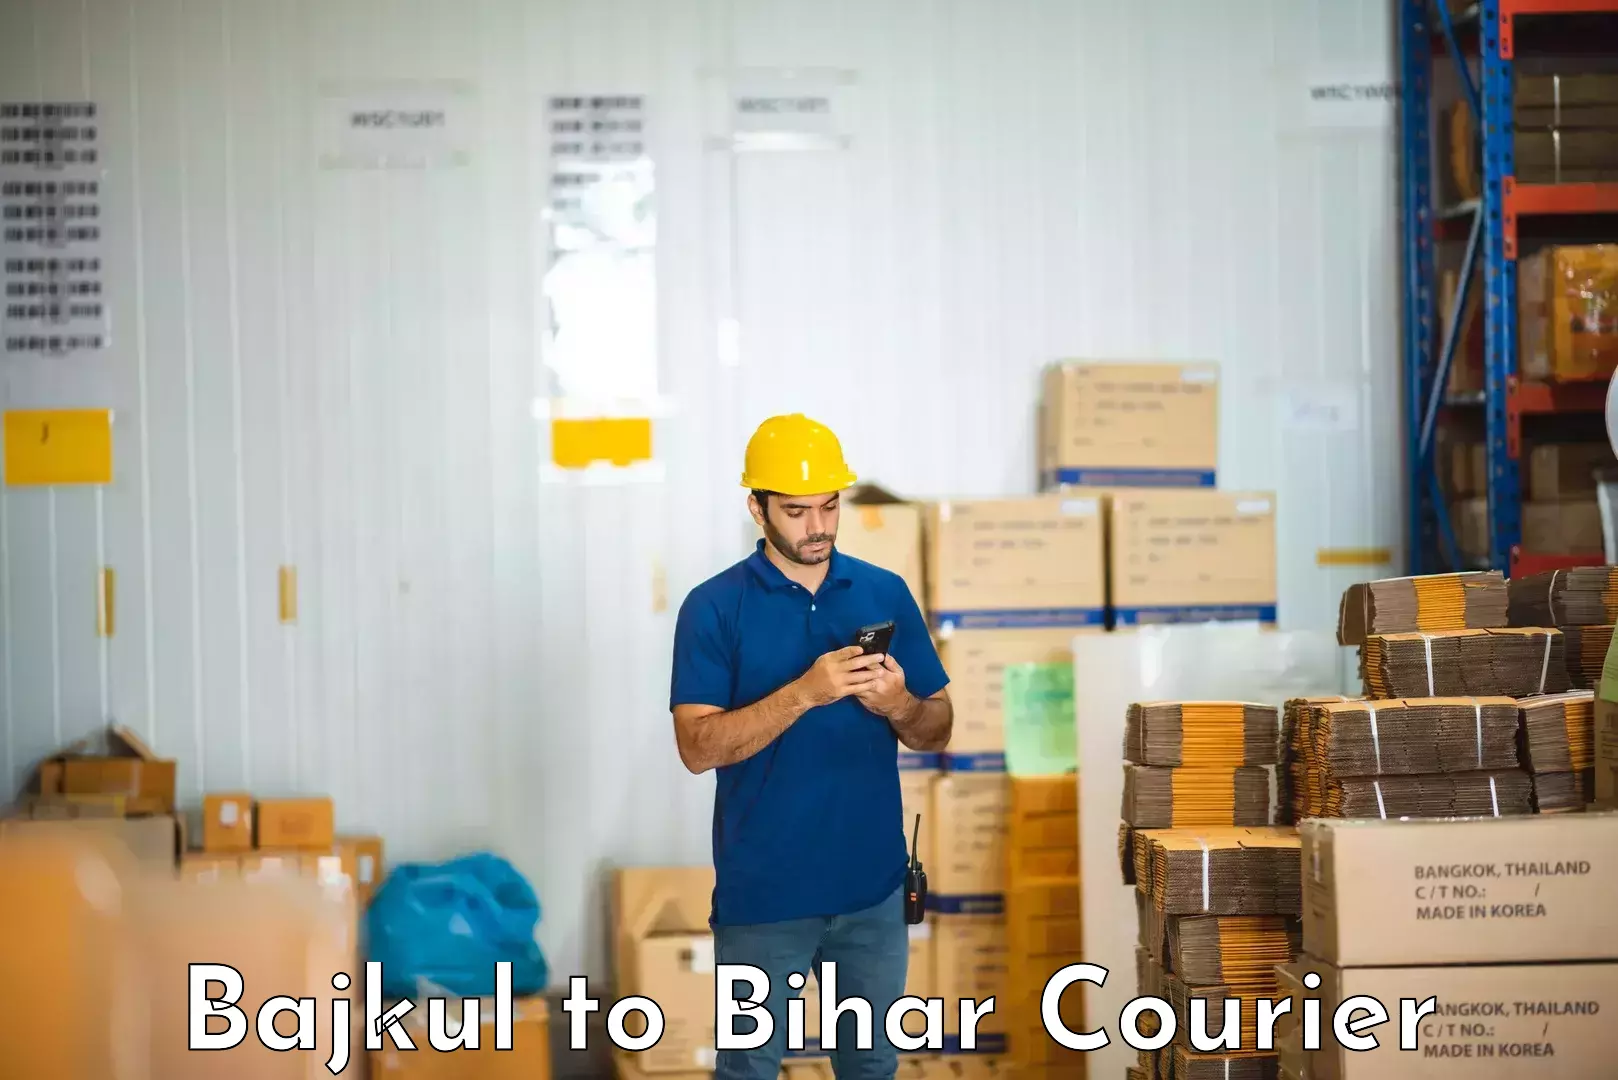 Skilled furniture transporters Bajkul to Bihar